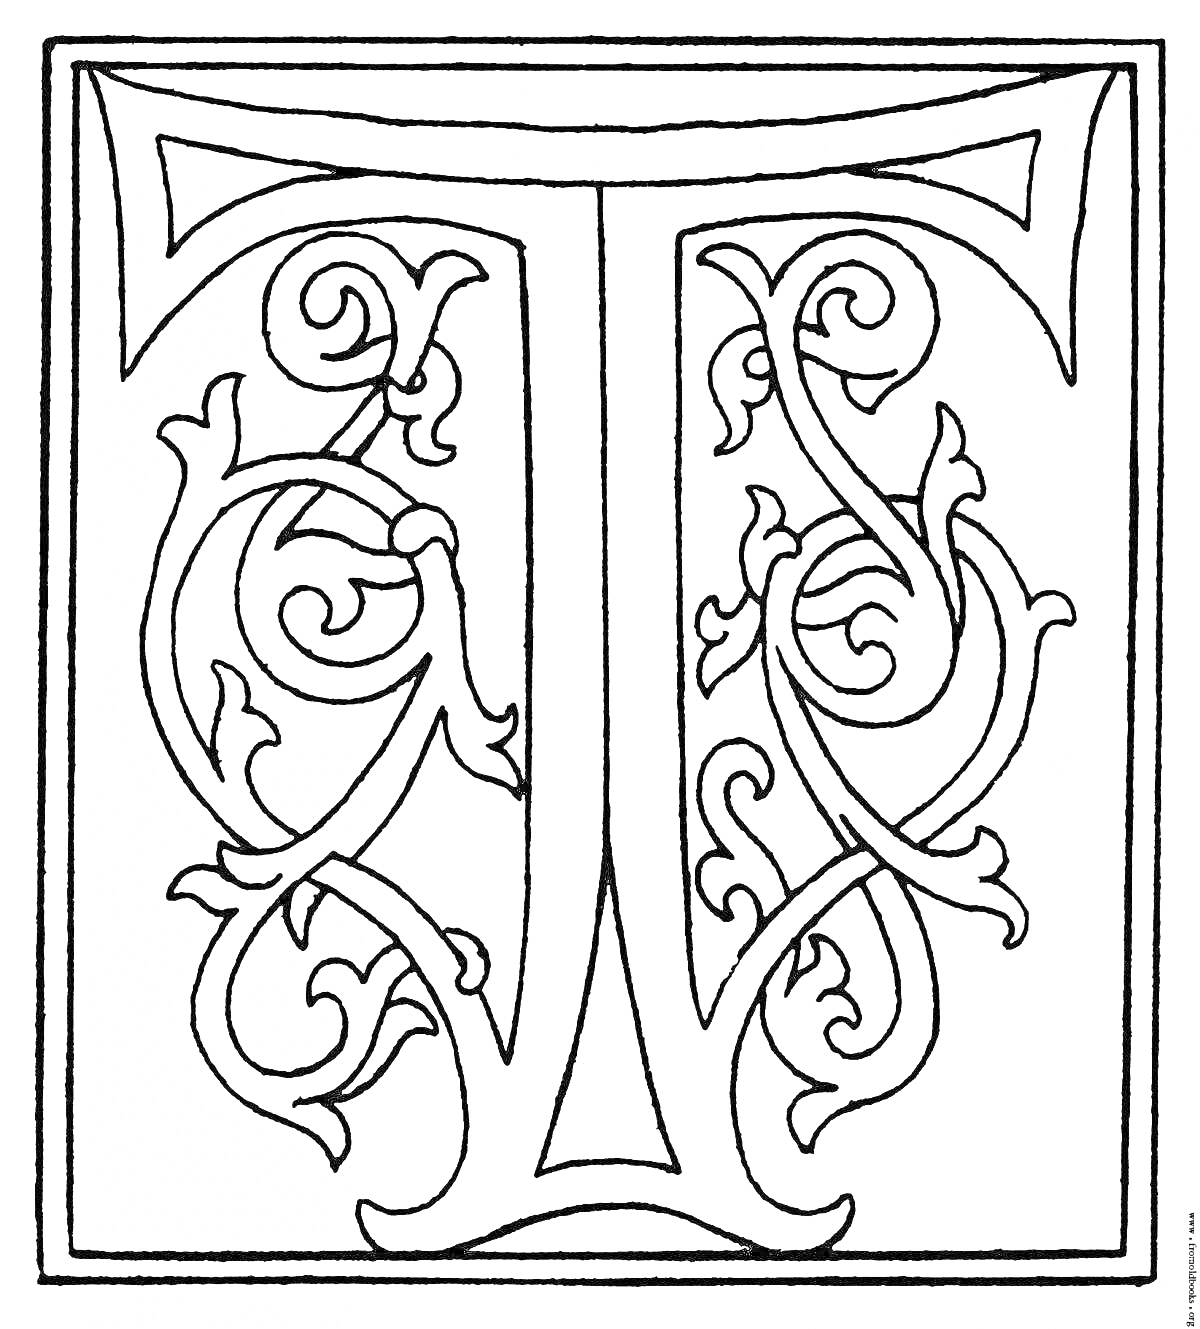 Буквица Т с растительным орнаментом в прямоугольной рамке